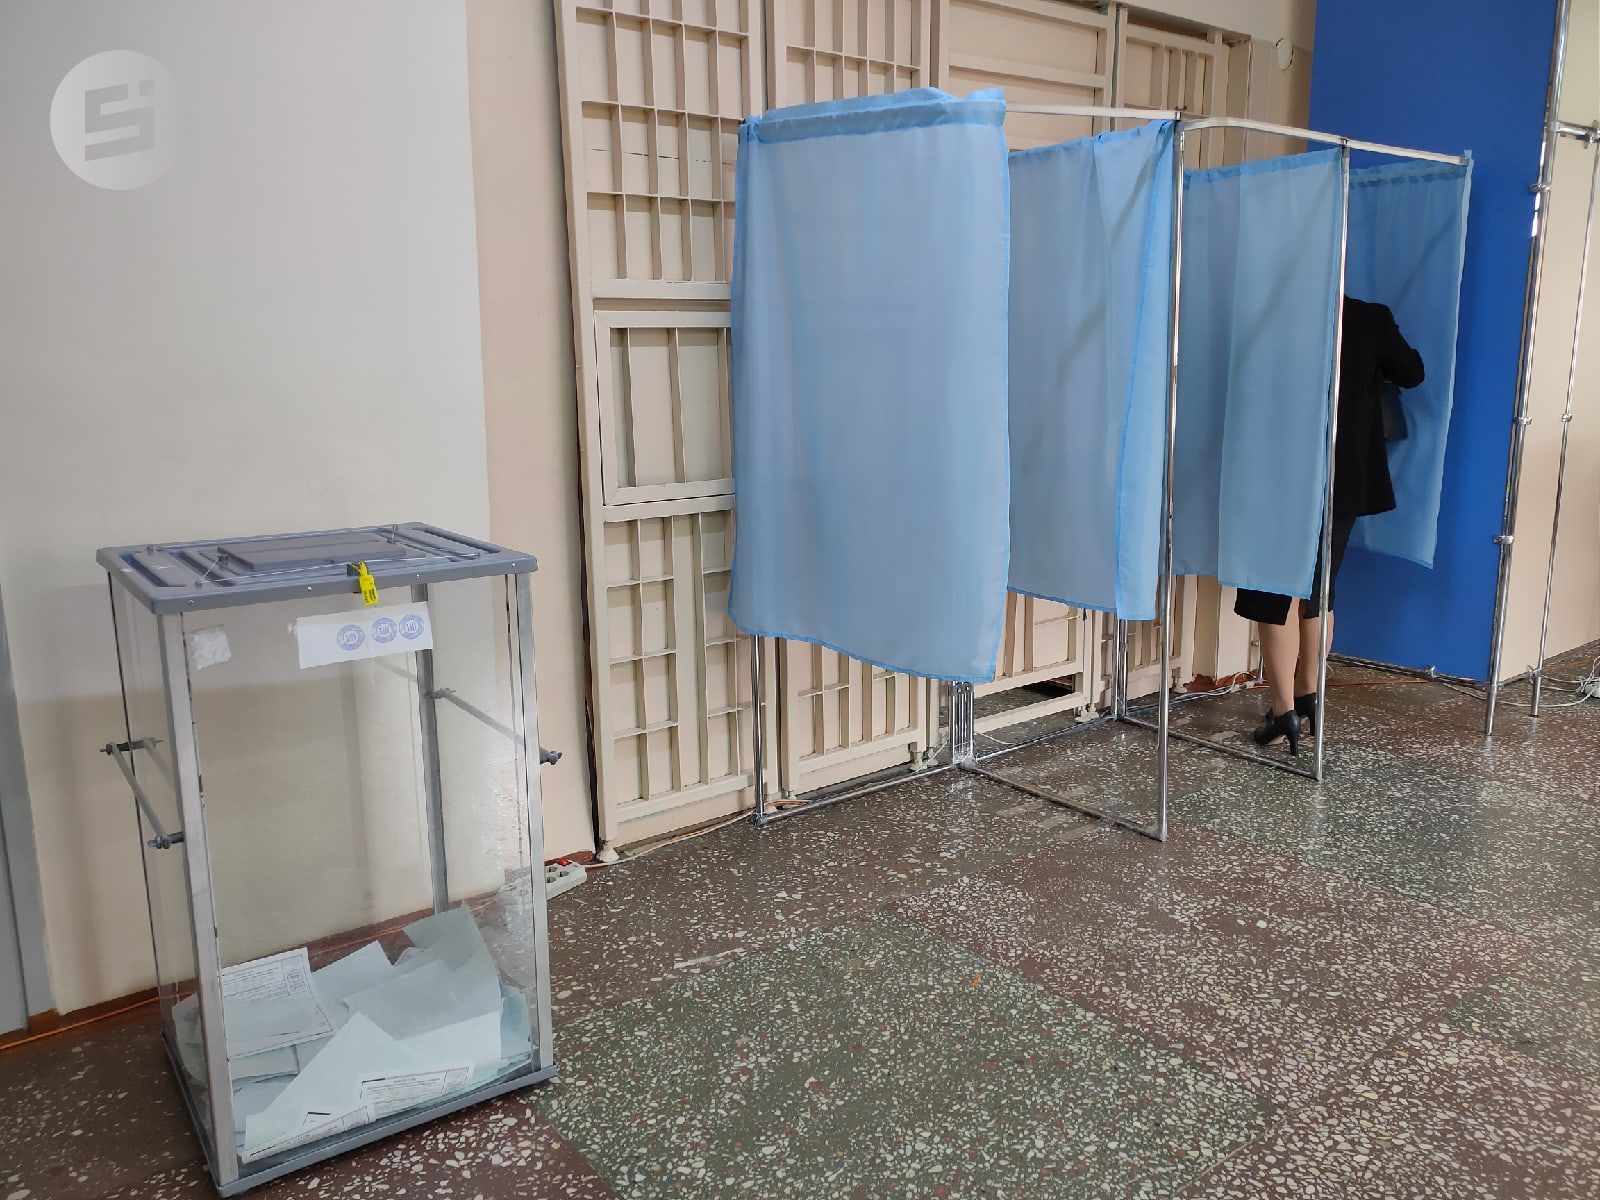 

ЦИК Удмуртии будет самостоятельно определять длительность голосования

